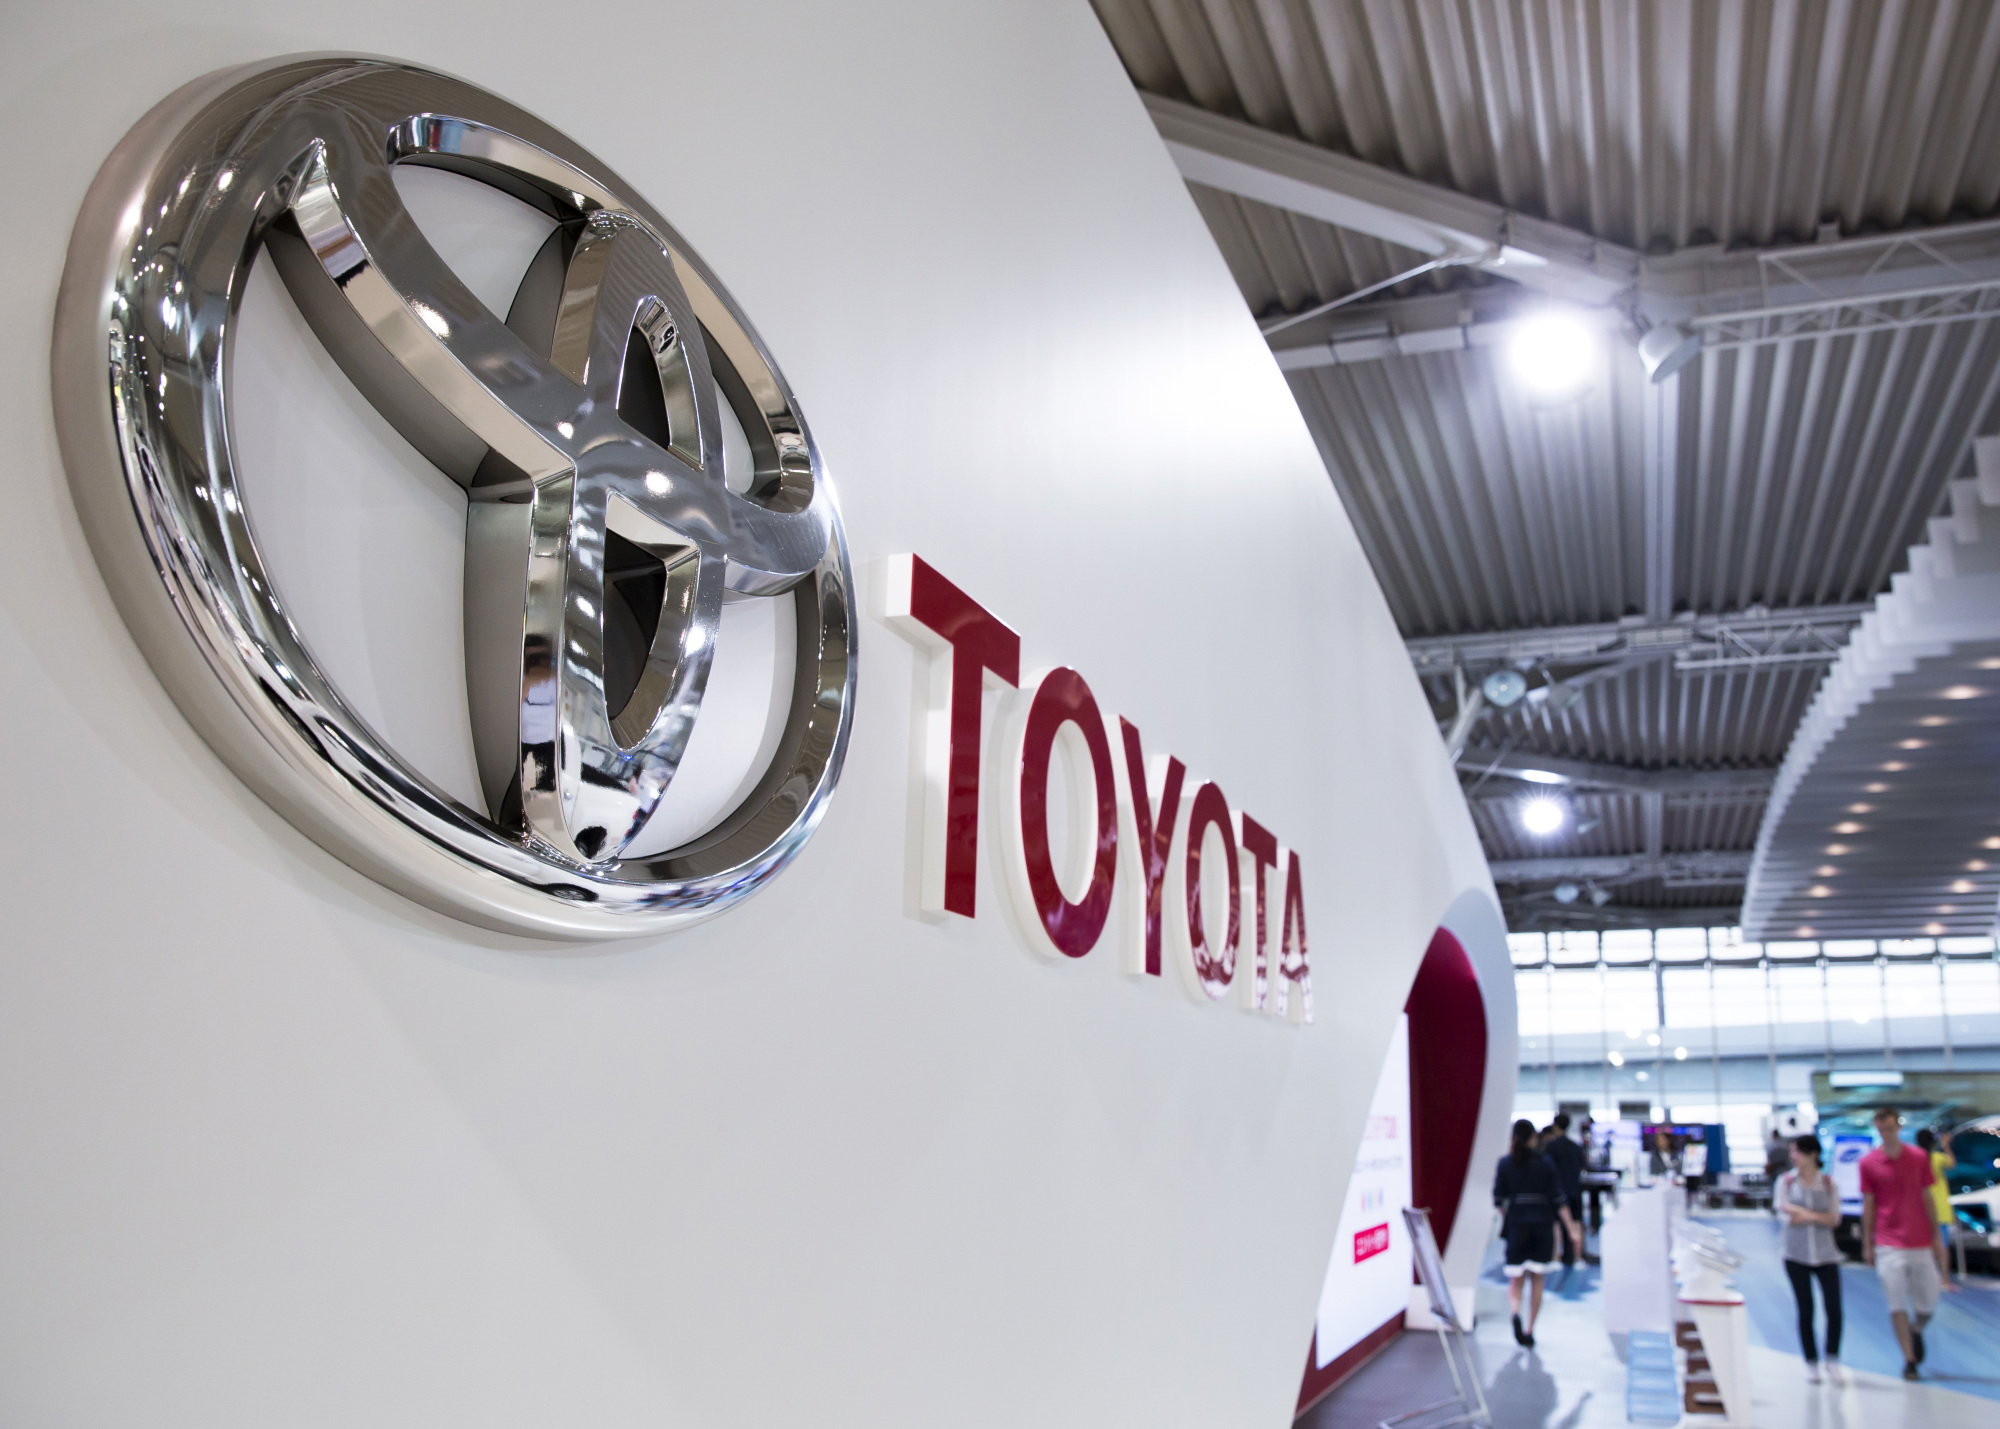 La producción de Toyota alcanza un récord mensual en julio gracias a una fuerte demanda